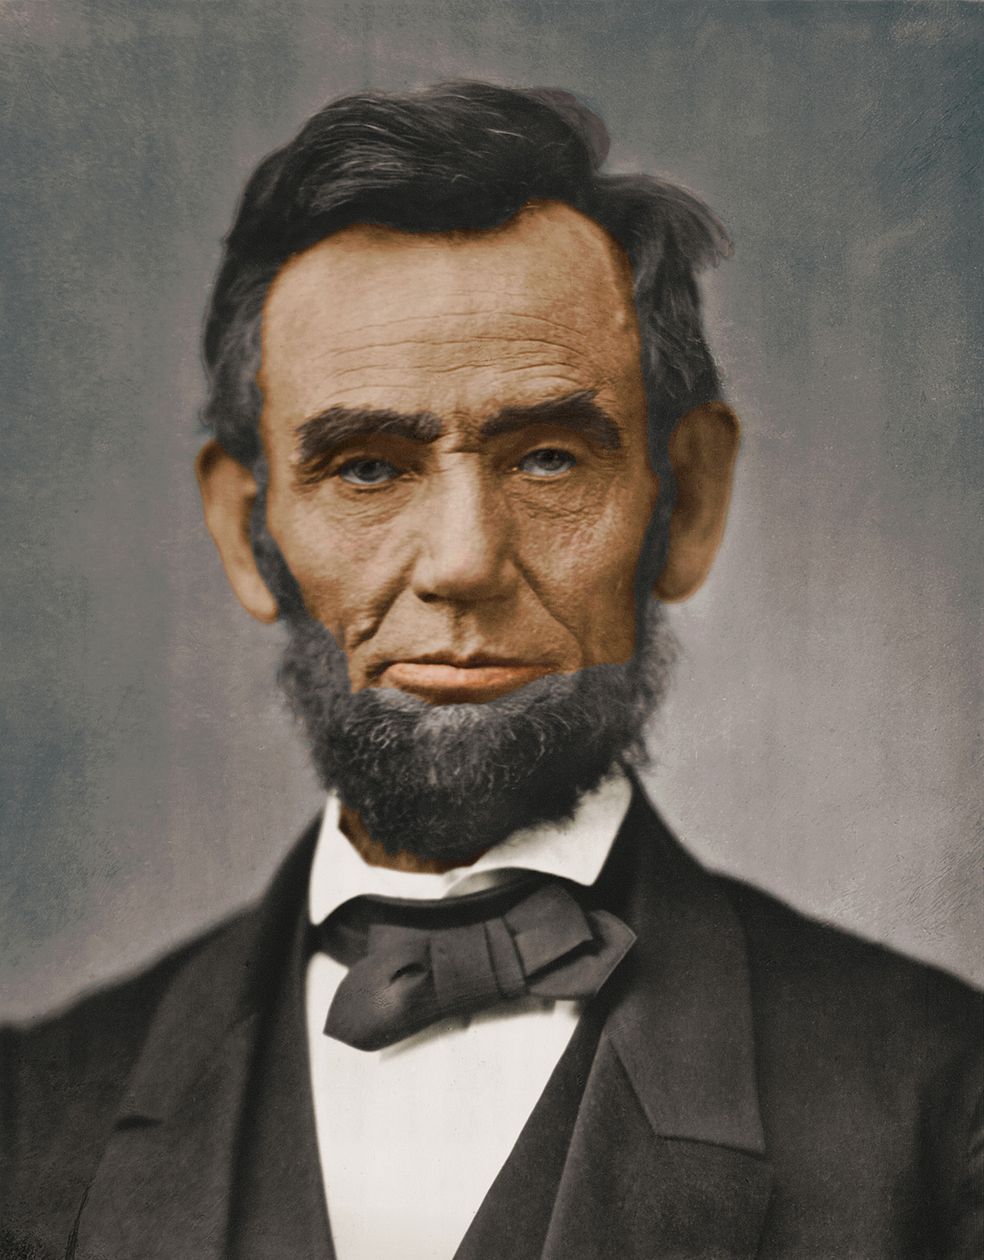 Abraham Lincoln (No. 16) - IQ 150